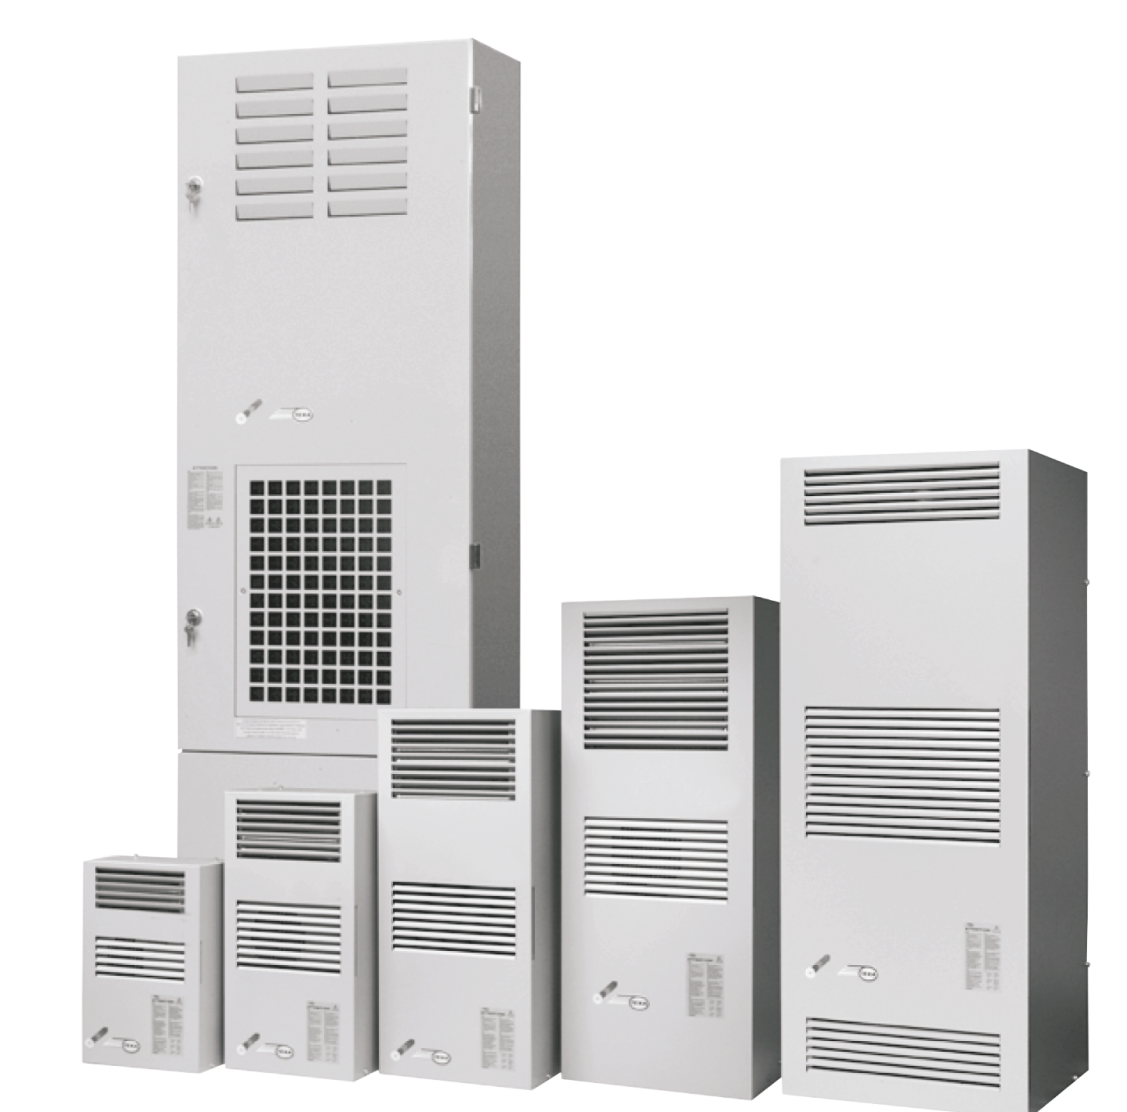 Air conditioner EGO12 (230V, 50-60Hz, 1250W)